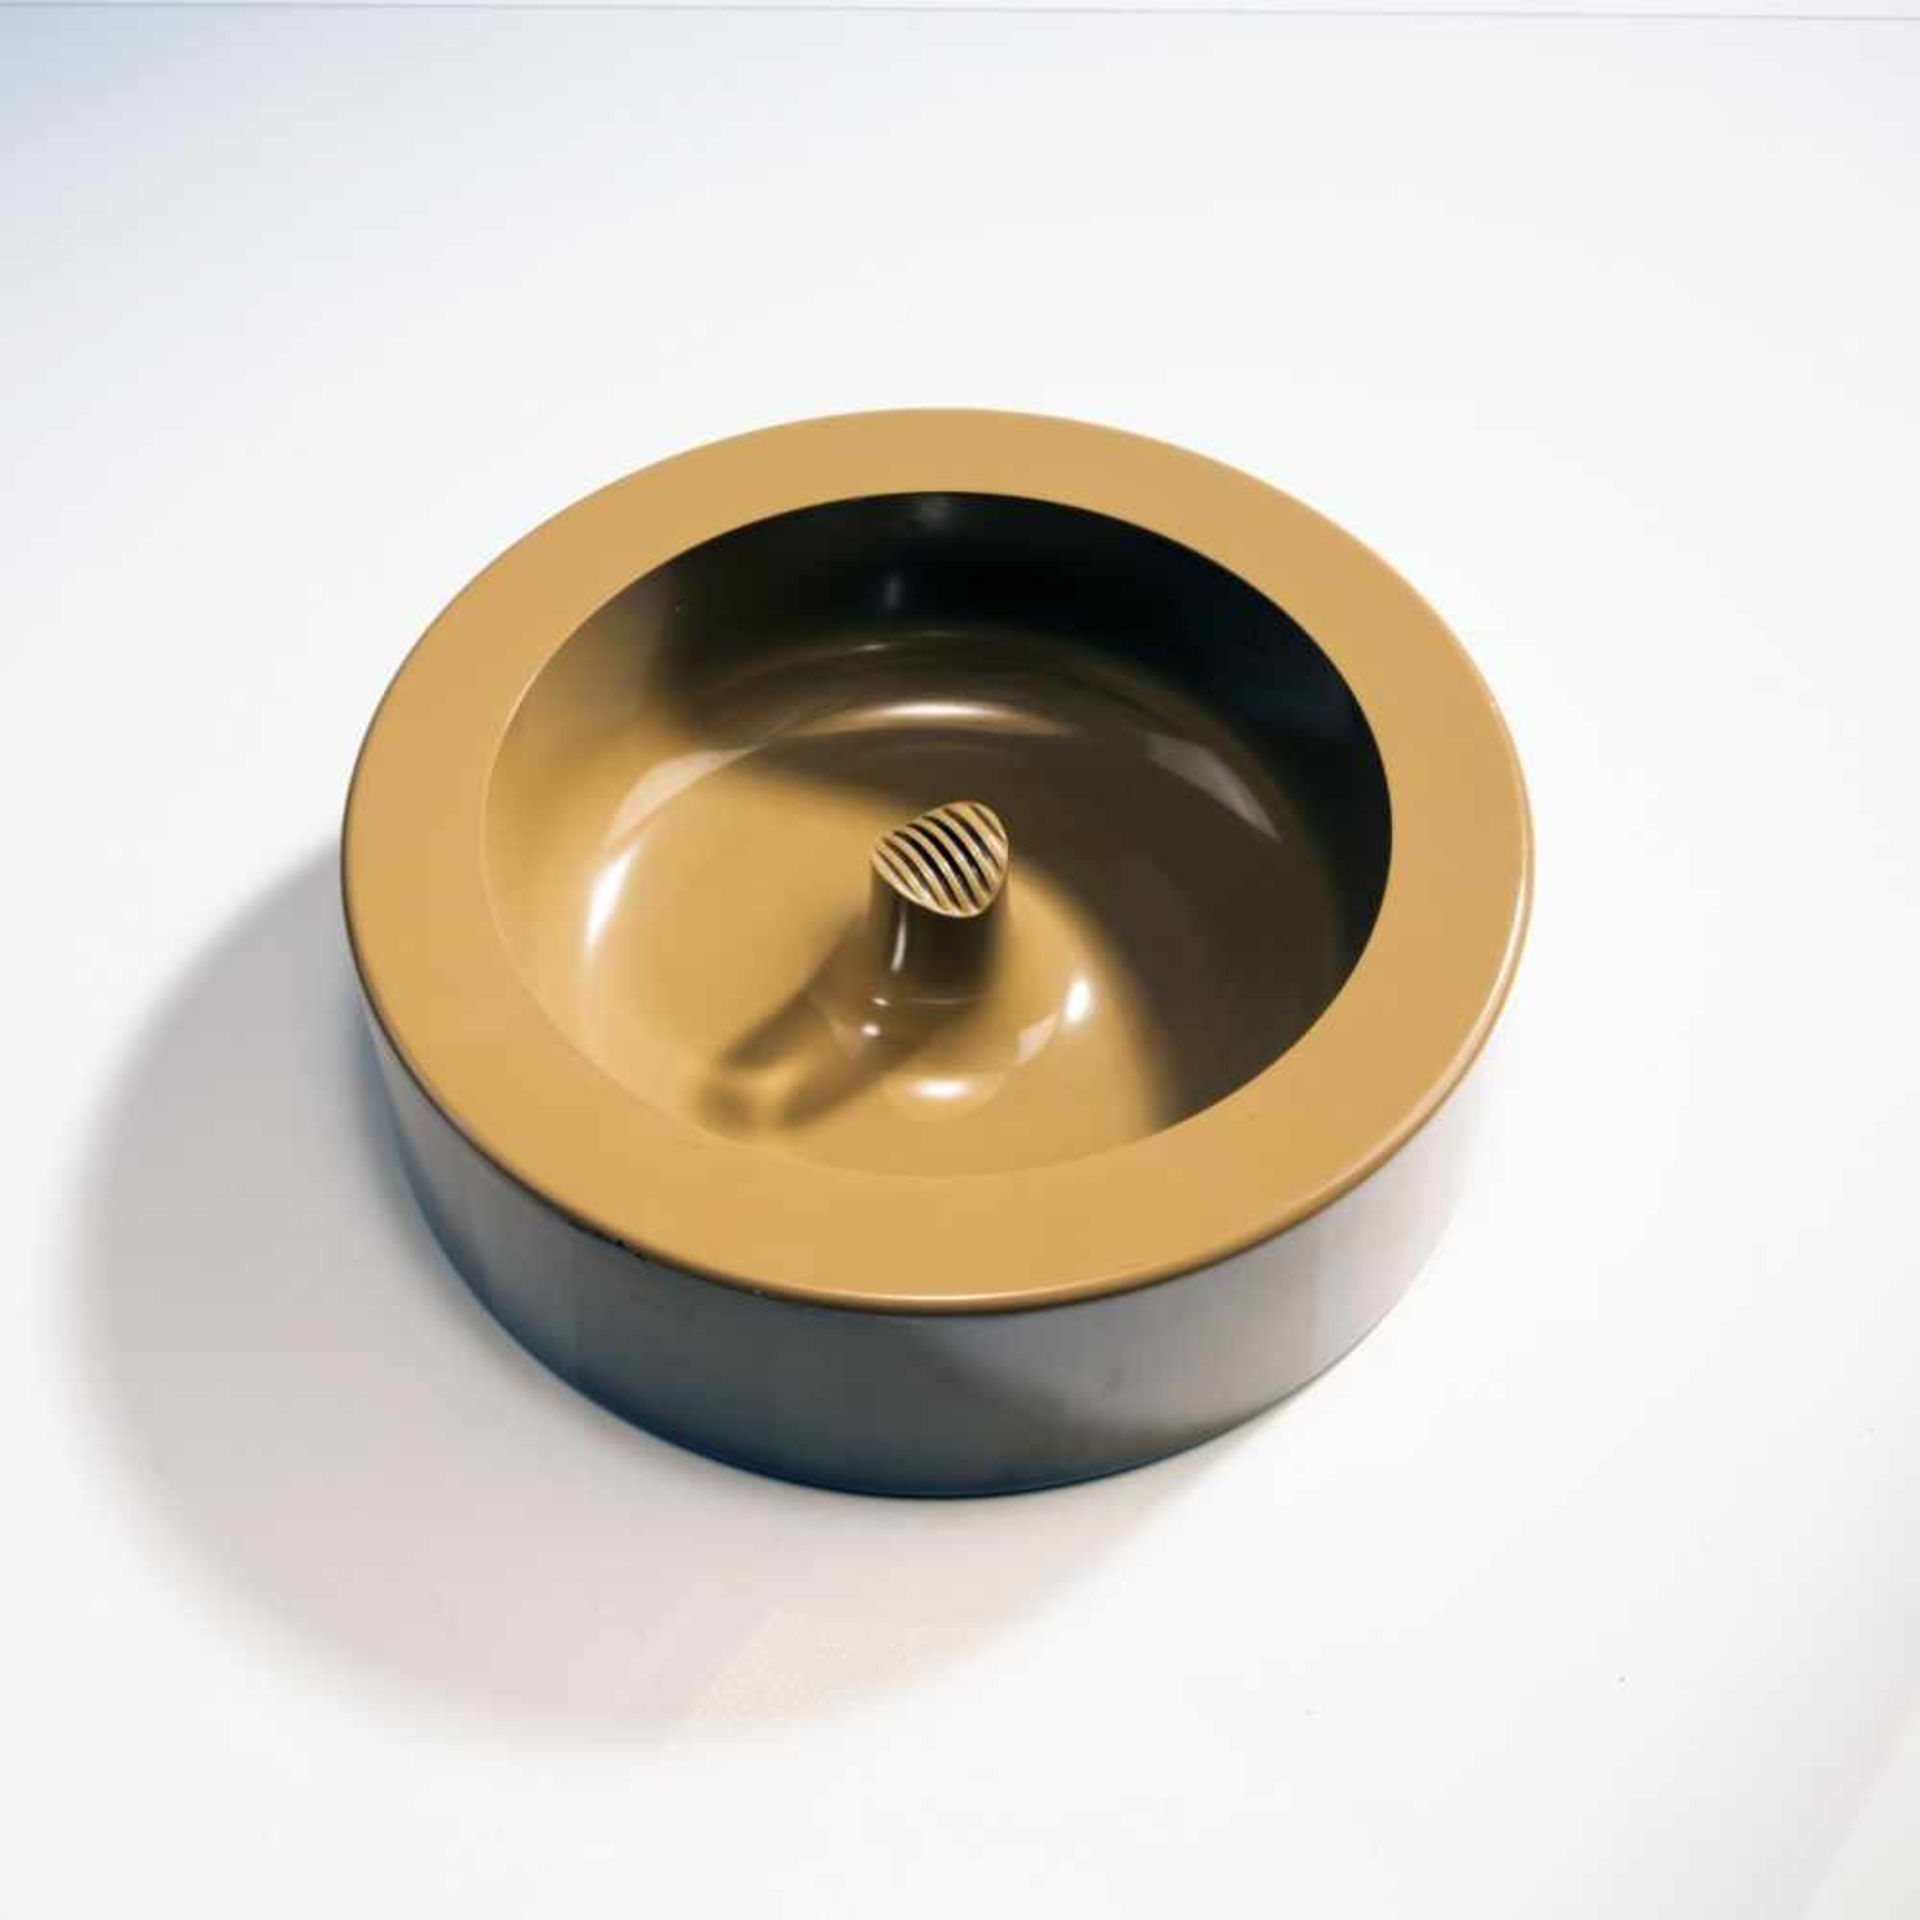 Enzo Mari, 'Molokai' ashtray, 1970Enzo Mari, 'Molokai' ashtray, 1970, H. 7.5 cm, D. 25.5 cm. Model